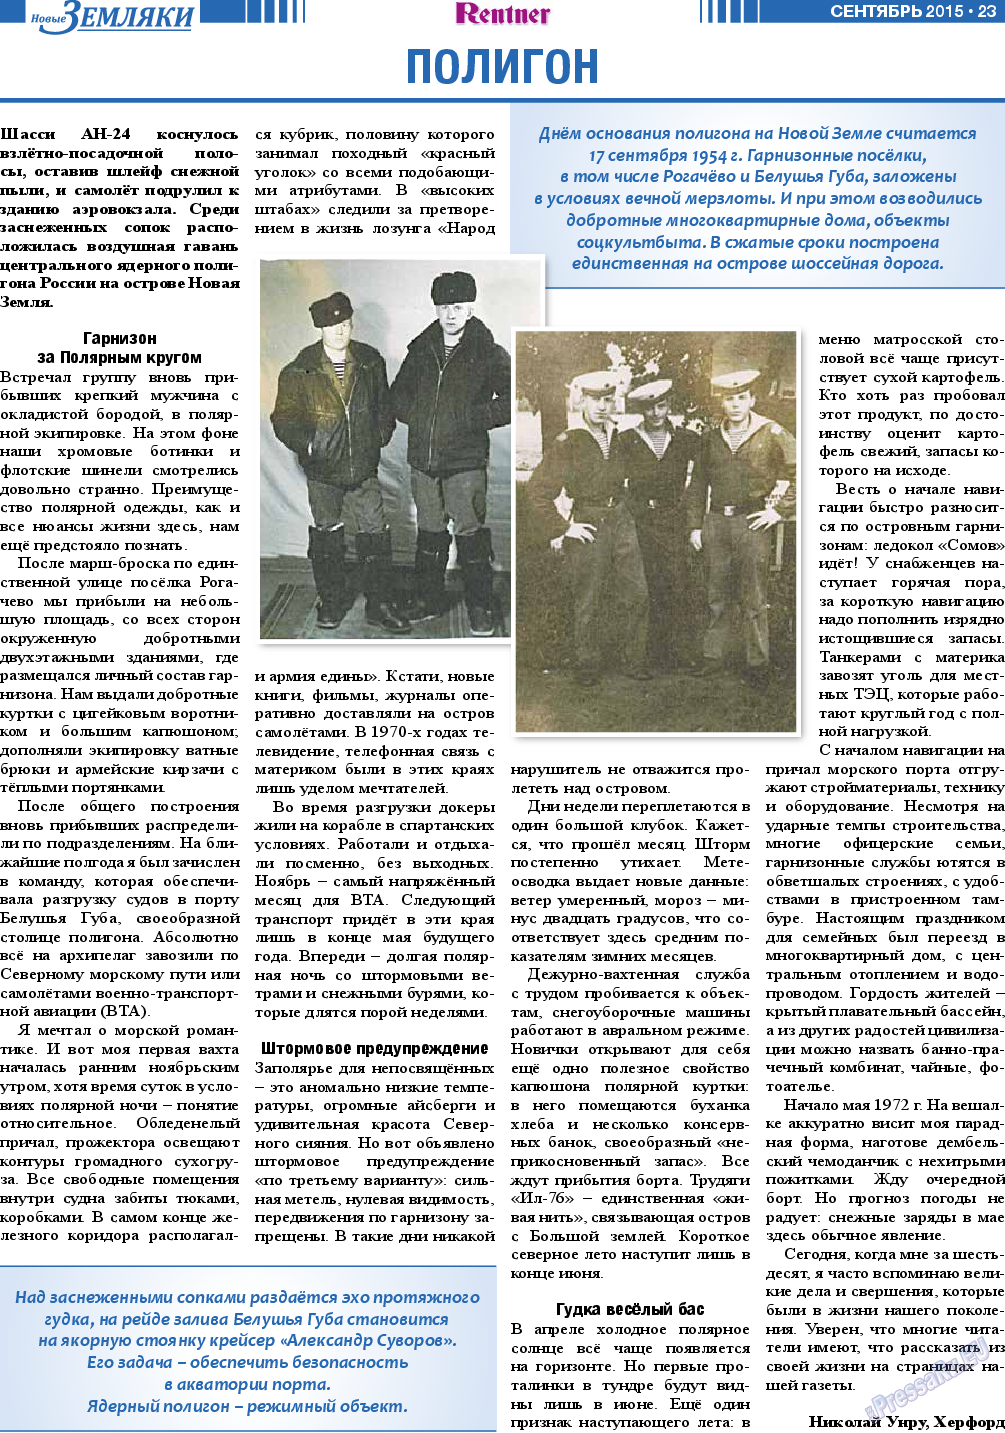 Новые Земляки, газета. 2015 №9 стр.23